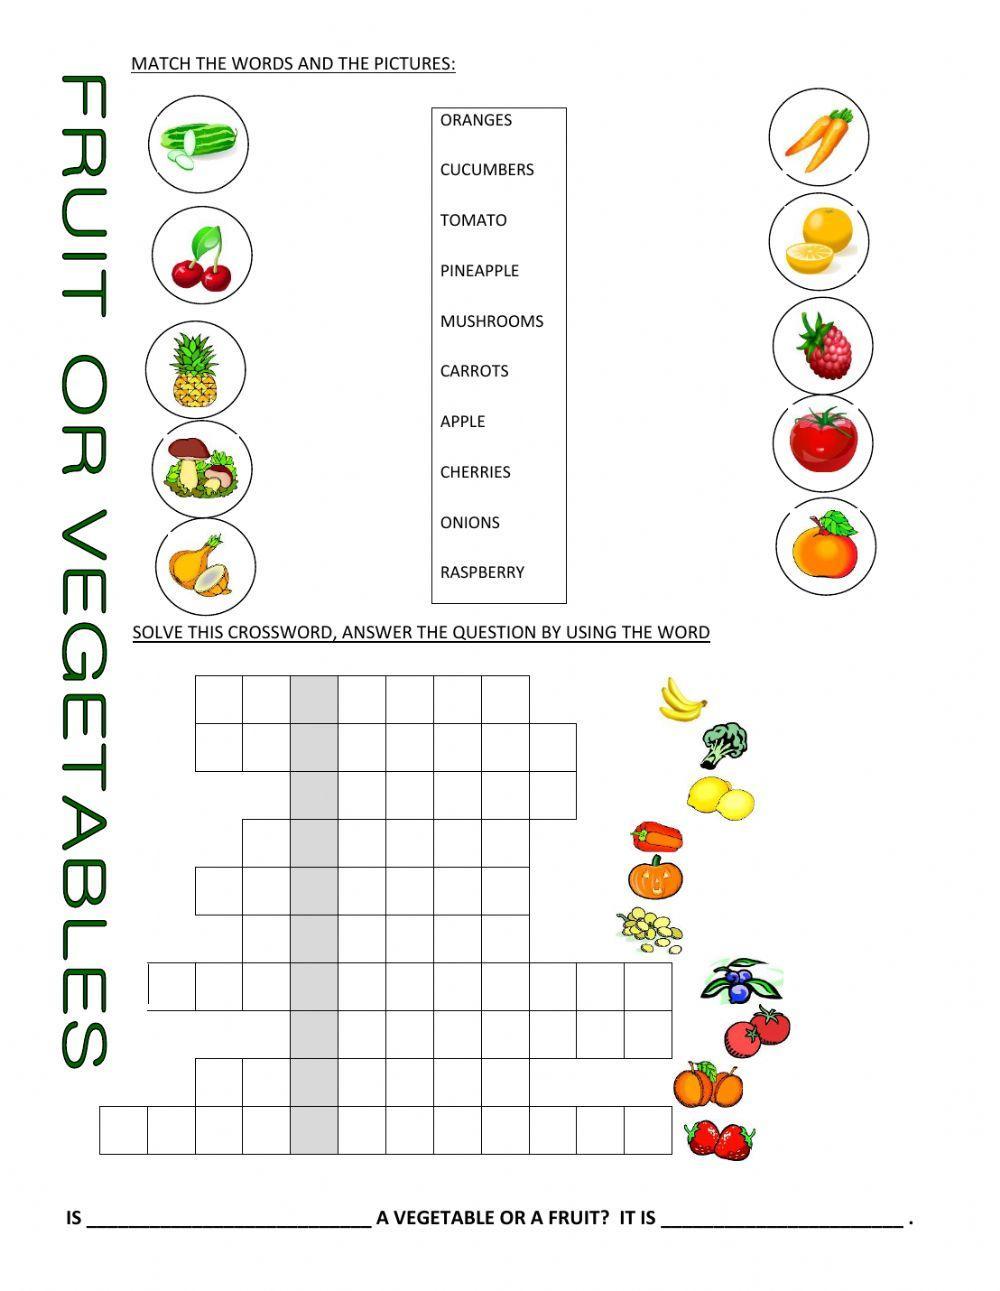 Fruit vs Vegetables